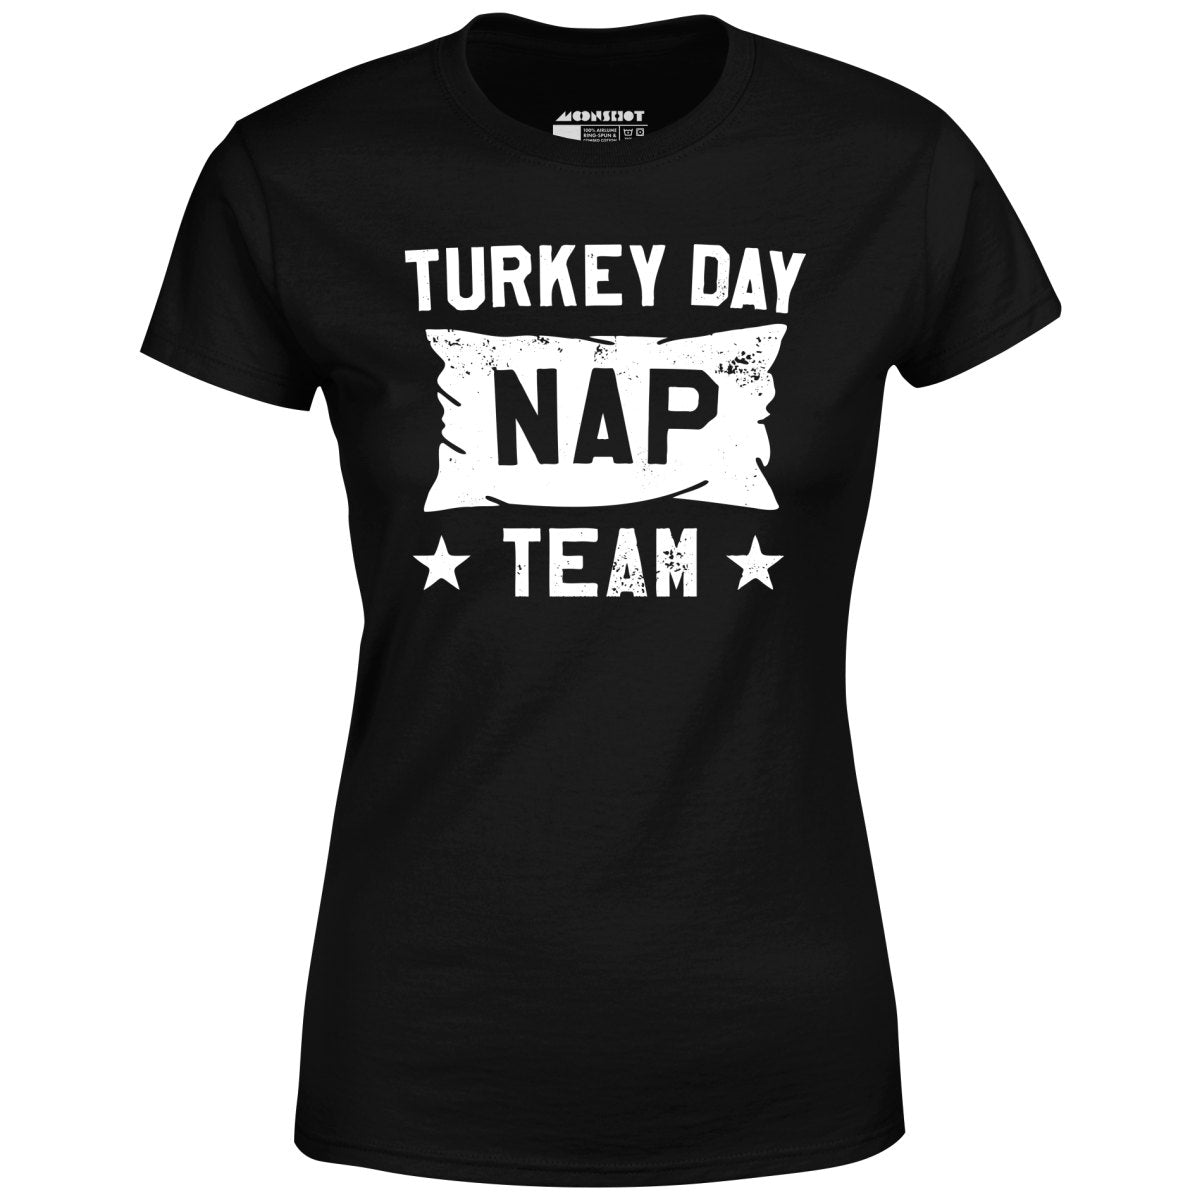 Turkey Day Nap Team - Women's T-Shirt